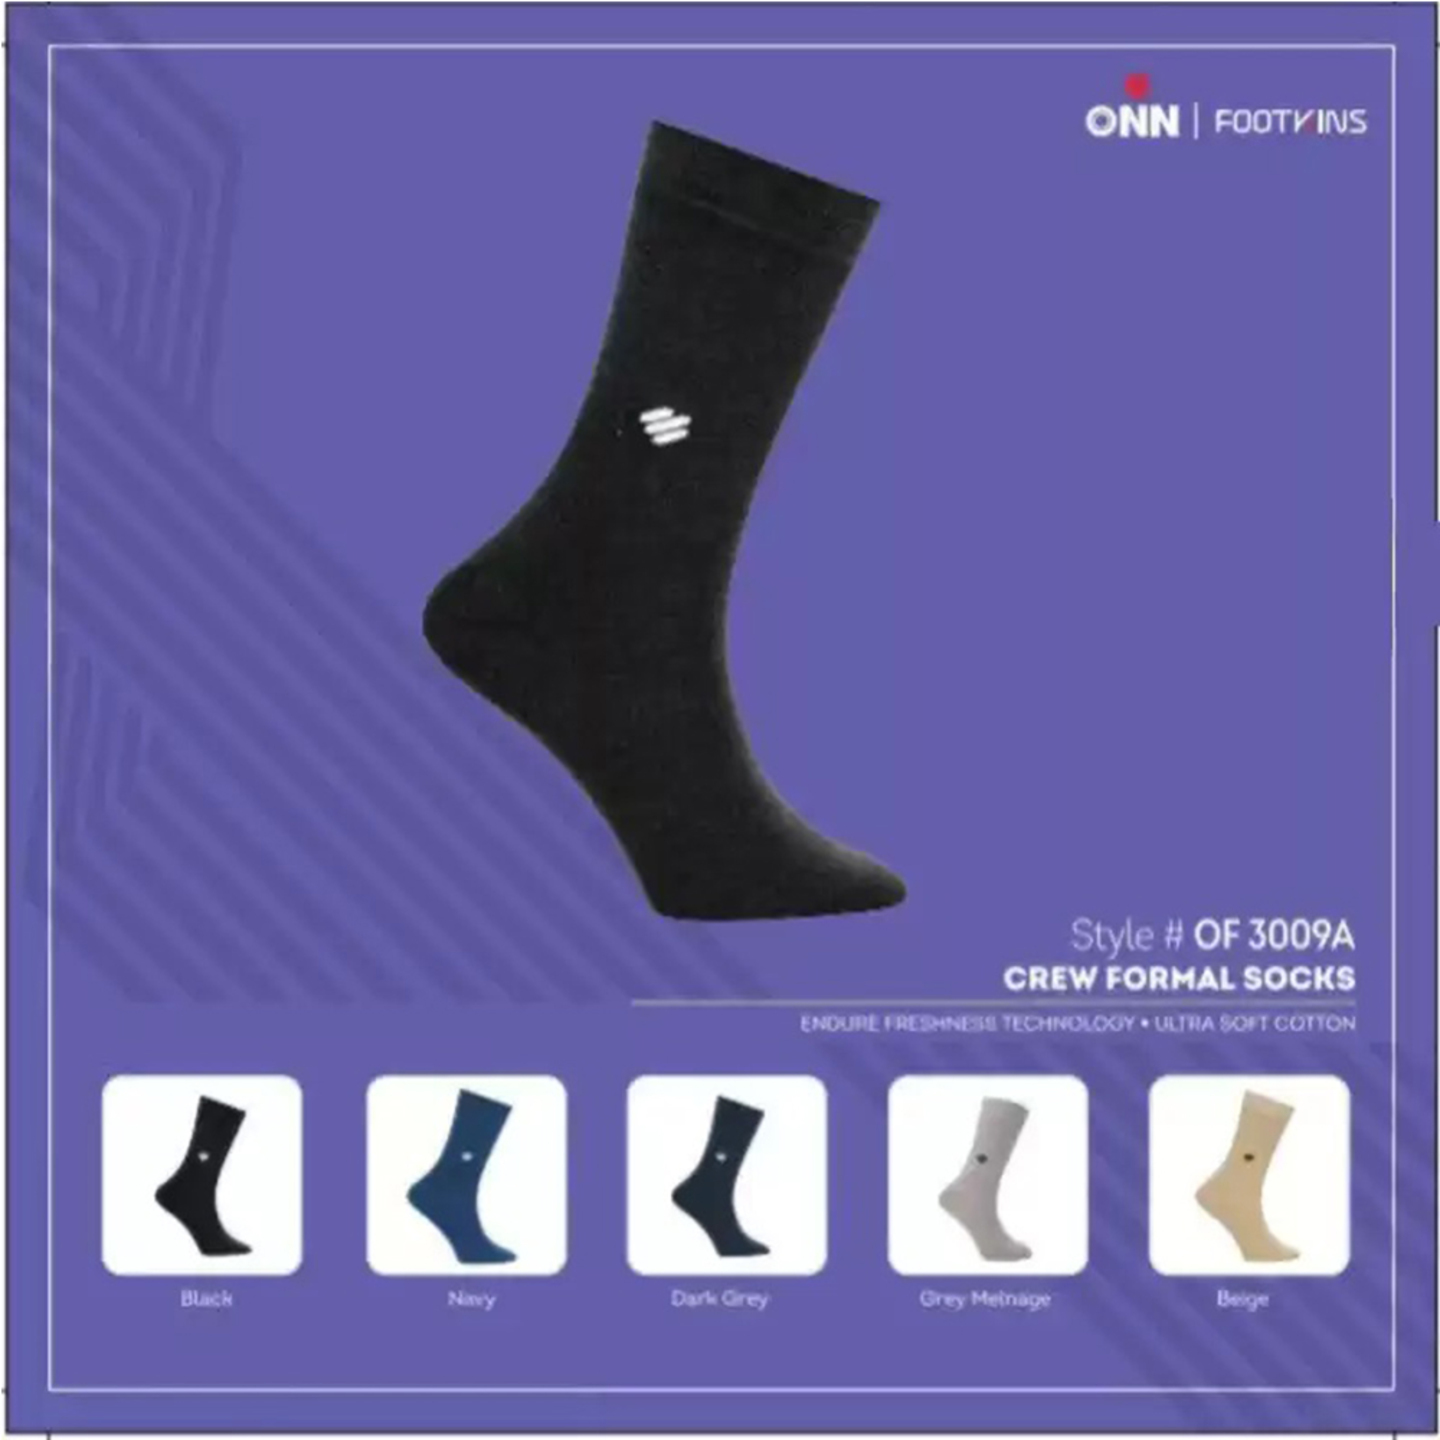 Crew Formal Socks for Men